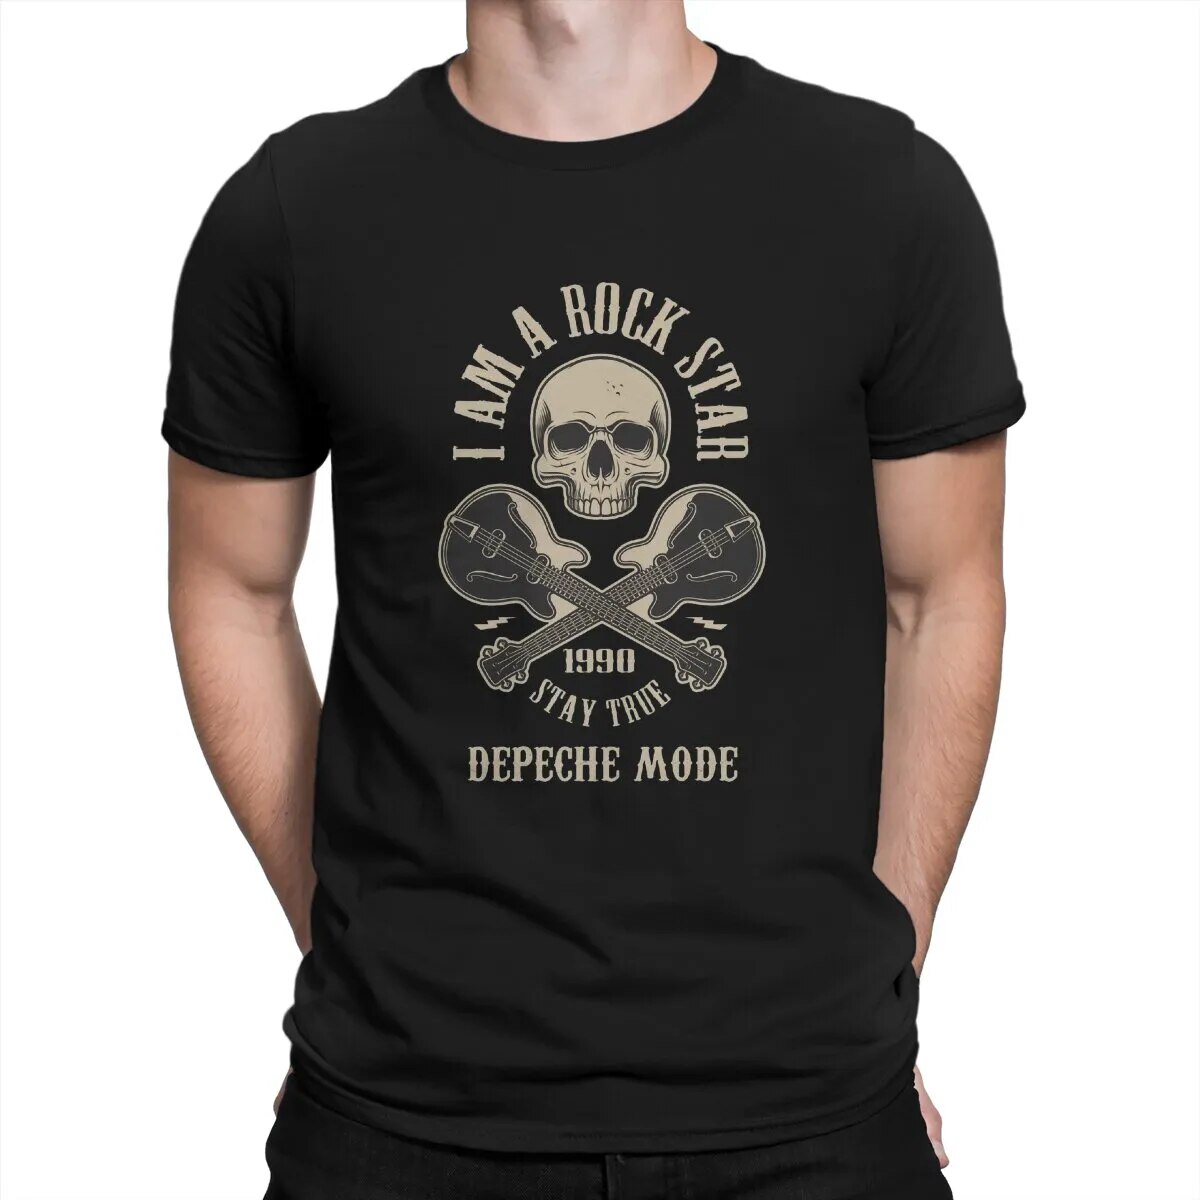 Men Rock Star T Shirt Depeche Cool Mode Cotton Clothes Cool Short Sleeve O Neck Tee Shirt Graphic Printed T-Shirt 4XL 5XL 6XL